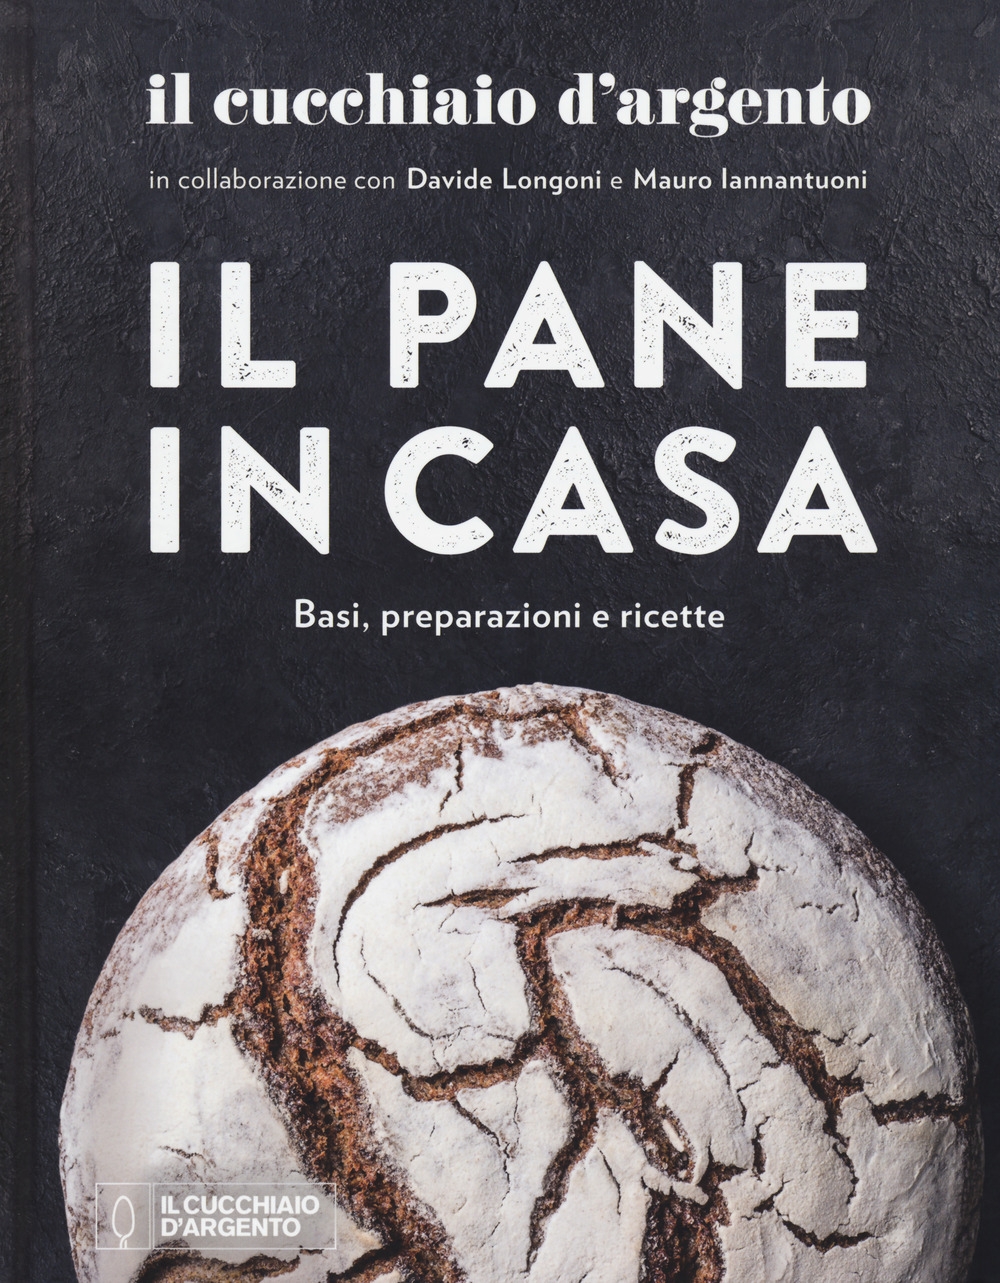 9788833331058 Davide Longoni; Iannantuoni Mauro 2020 - Il Cucchiaio d' Argento. Il pane in casa. Basi, preparazioni e ricette 